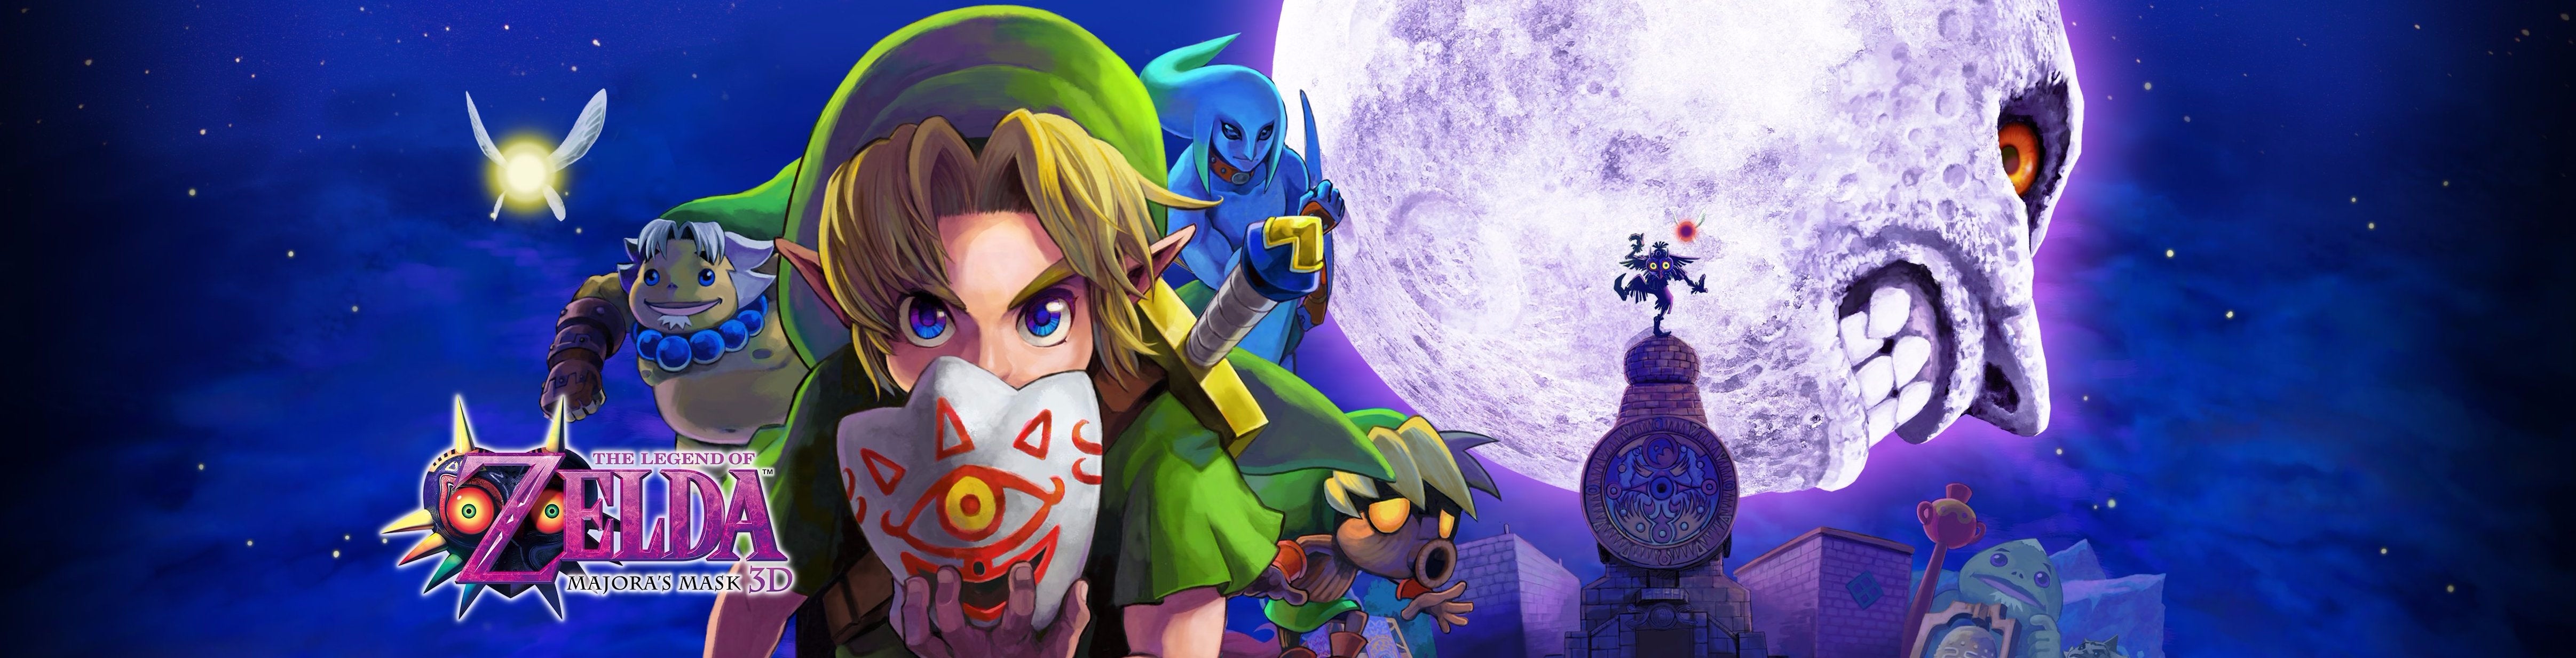 Image for RECENZE The Legend of Zelda: Majora's Mask 3D